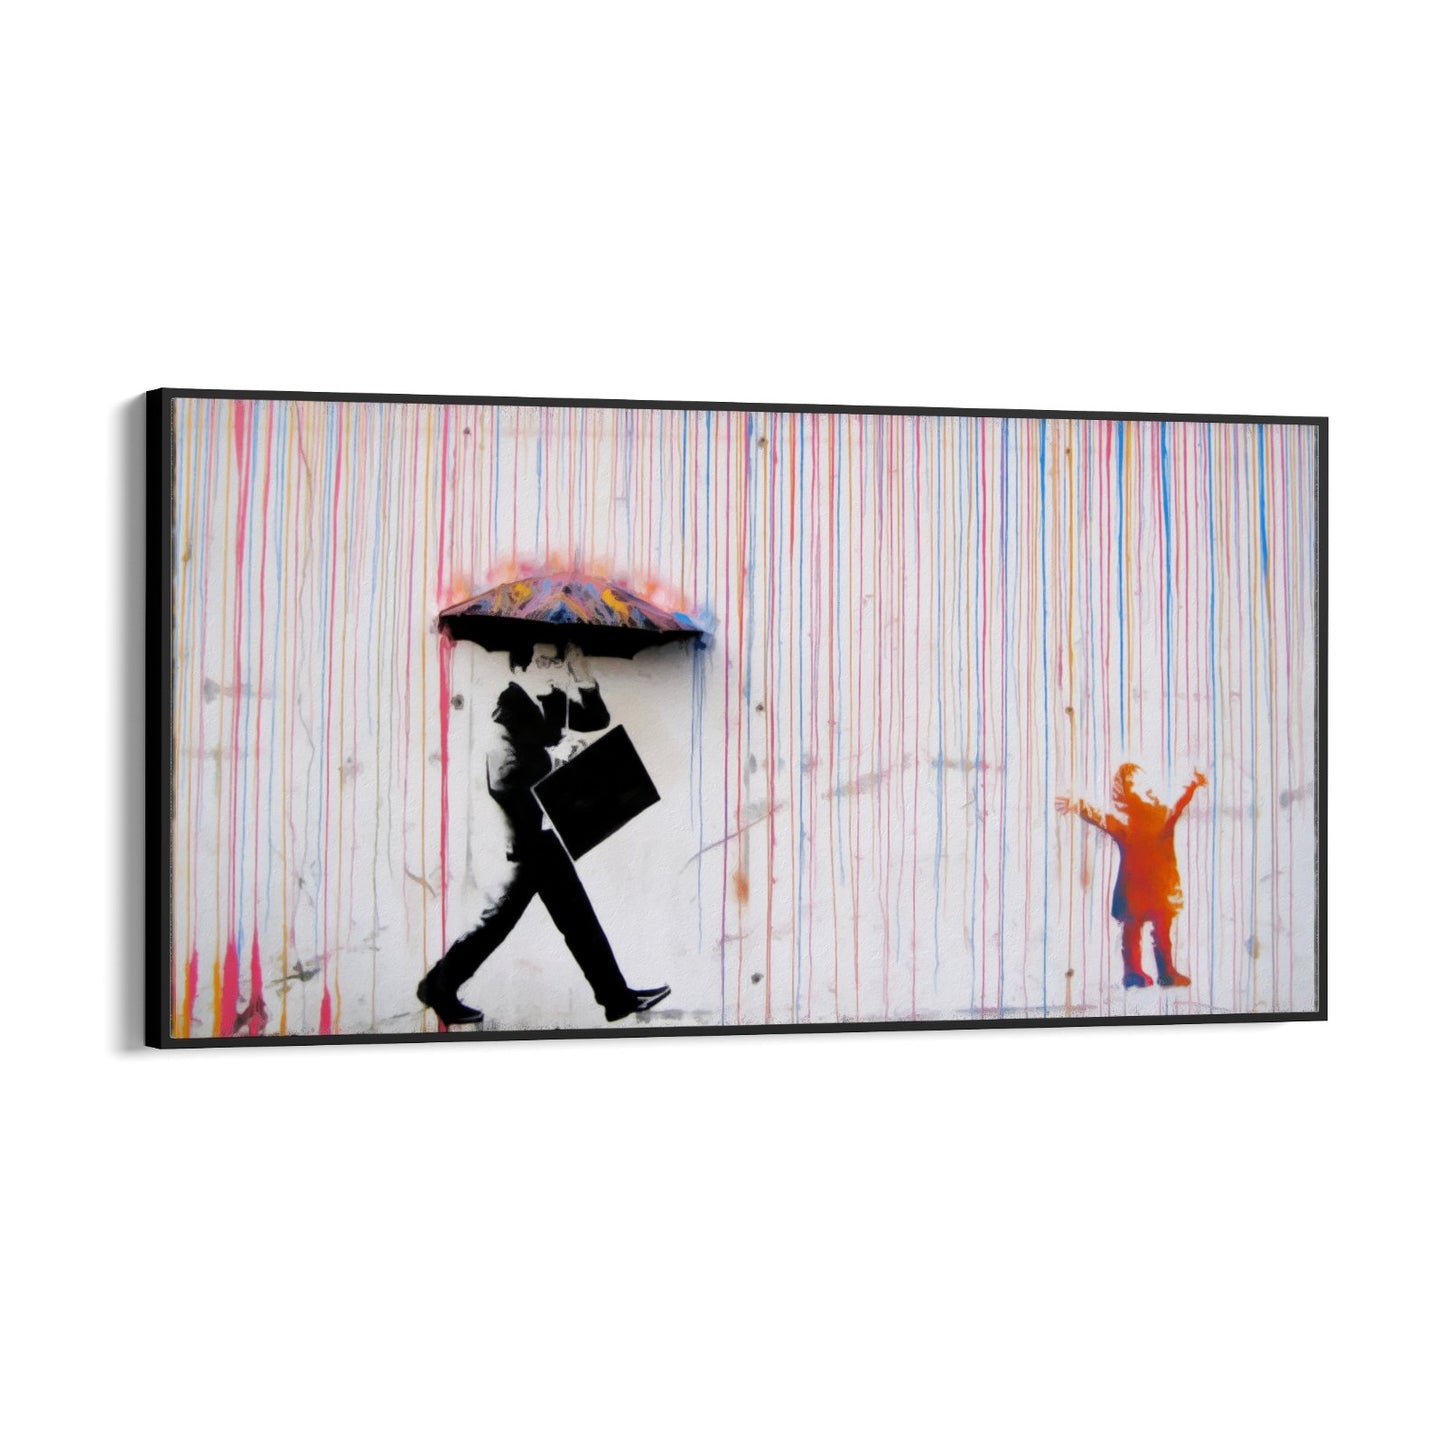 Farebný dážď, Banksy